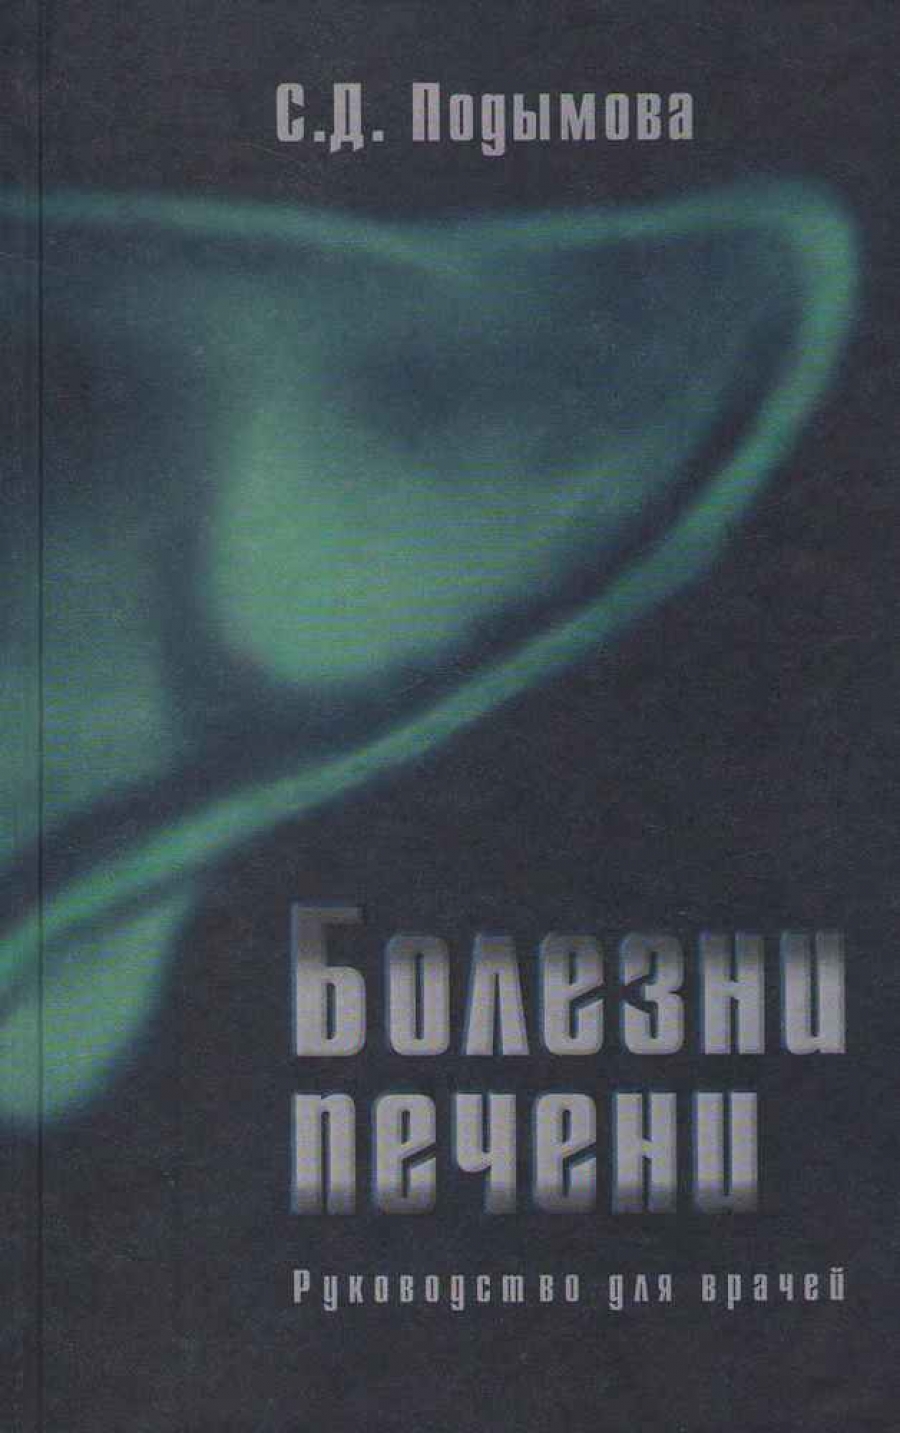  ..  . 4- .,  (2005) 